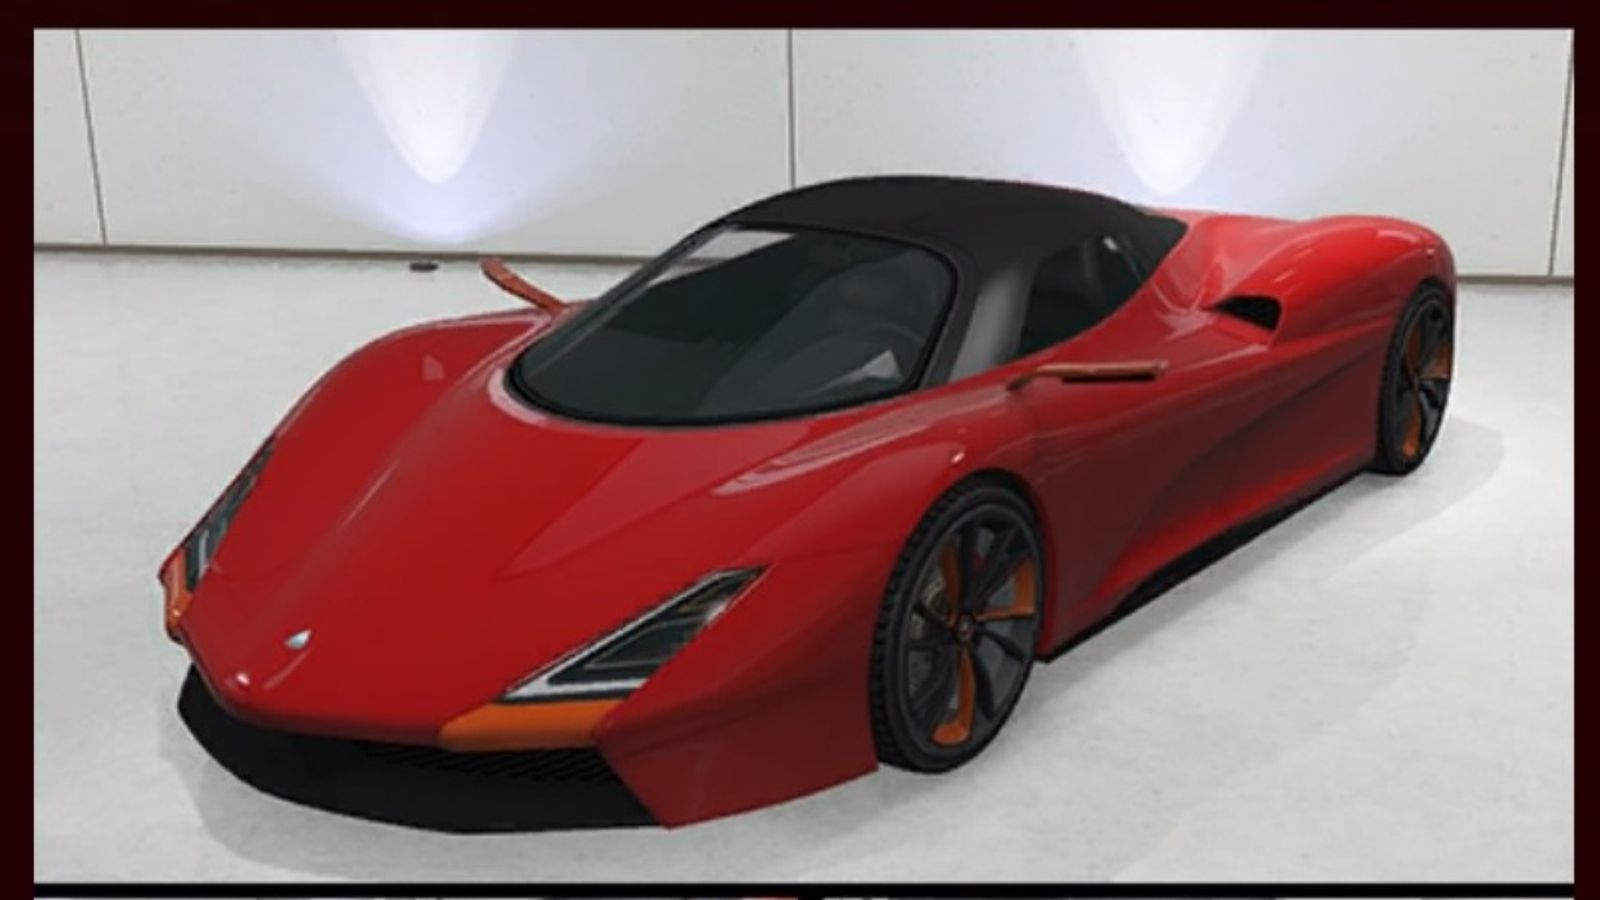 GTA Online Overflod Zeno Car in Red